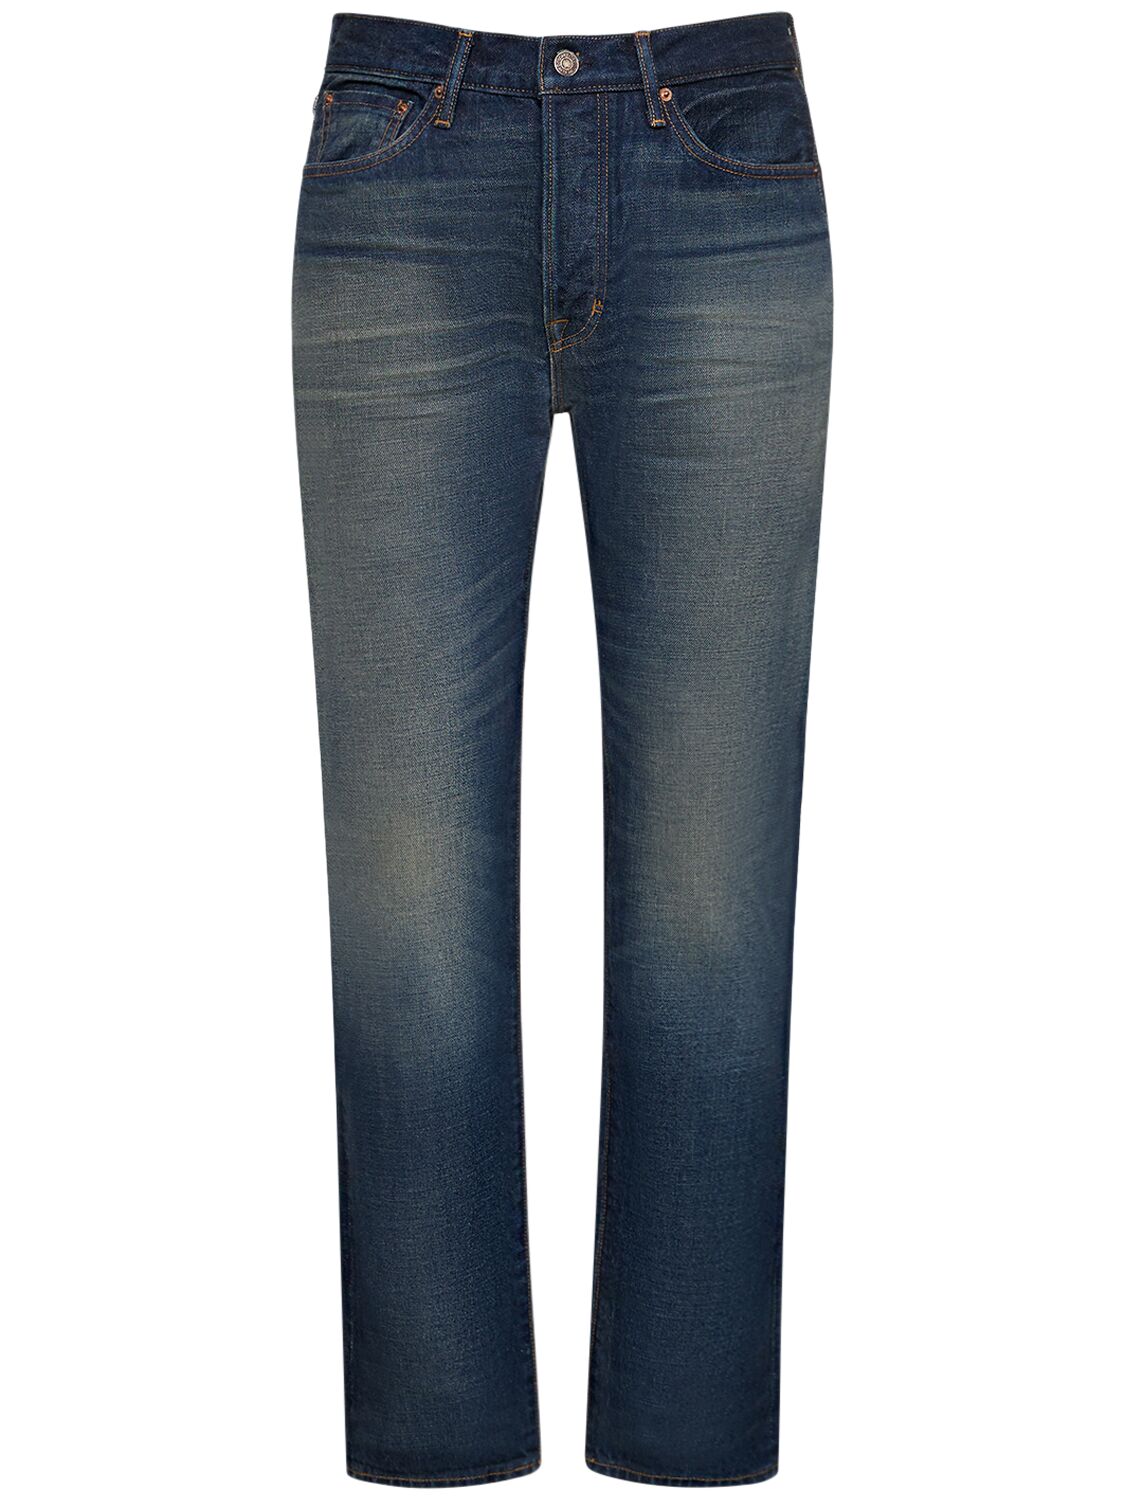 Standard Fit Denim Jeans - TOM FORD - Modalova